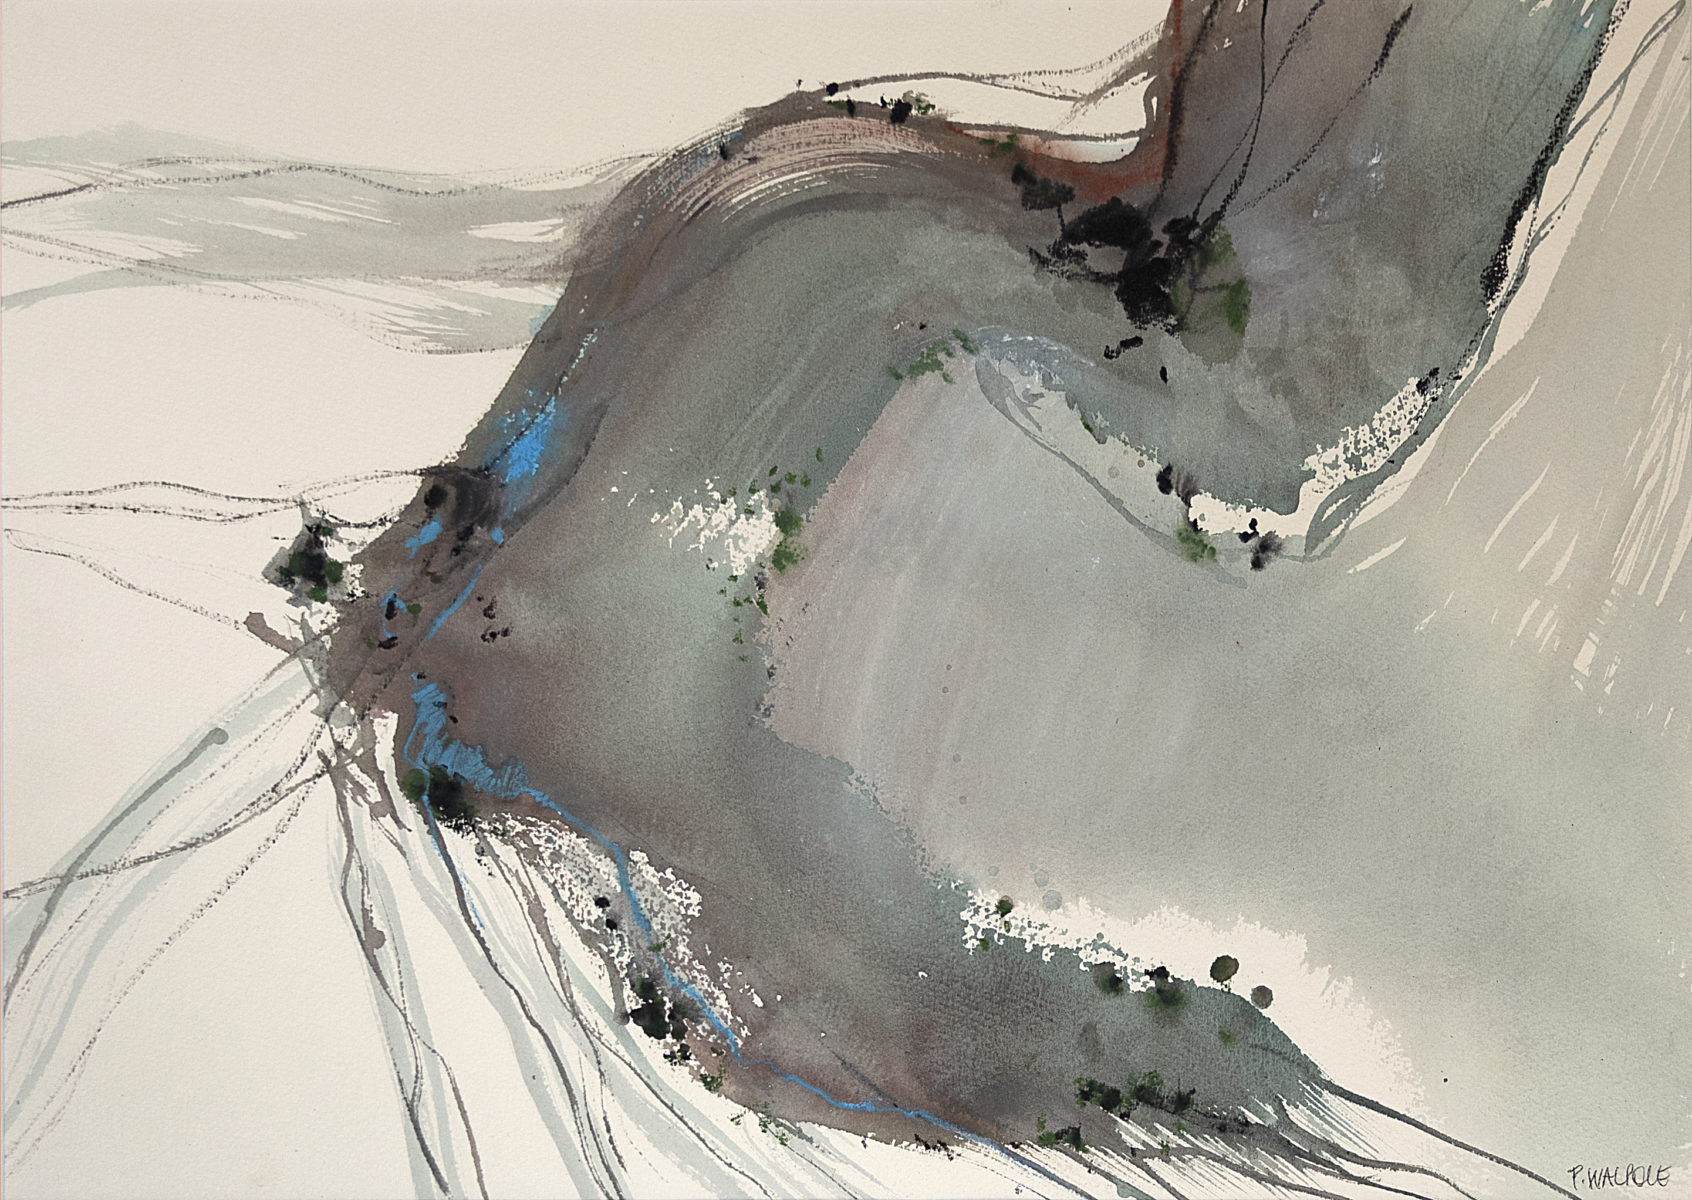 Swollen River II | Pam Walpole | Mixed media on paper | 70.5 x 83 cm, framed in dark-stained oak | SOLD